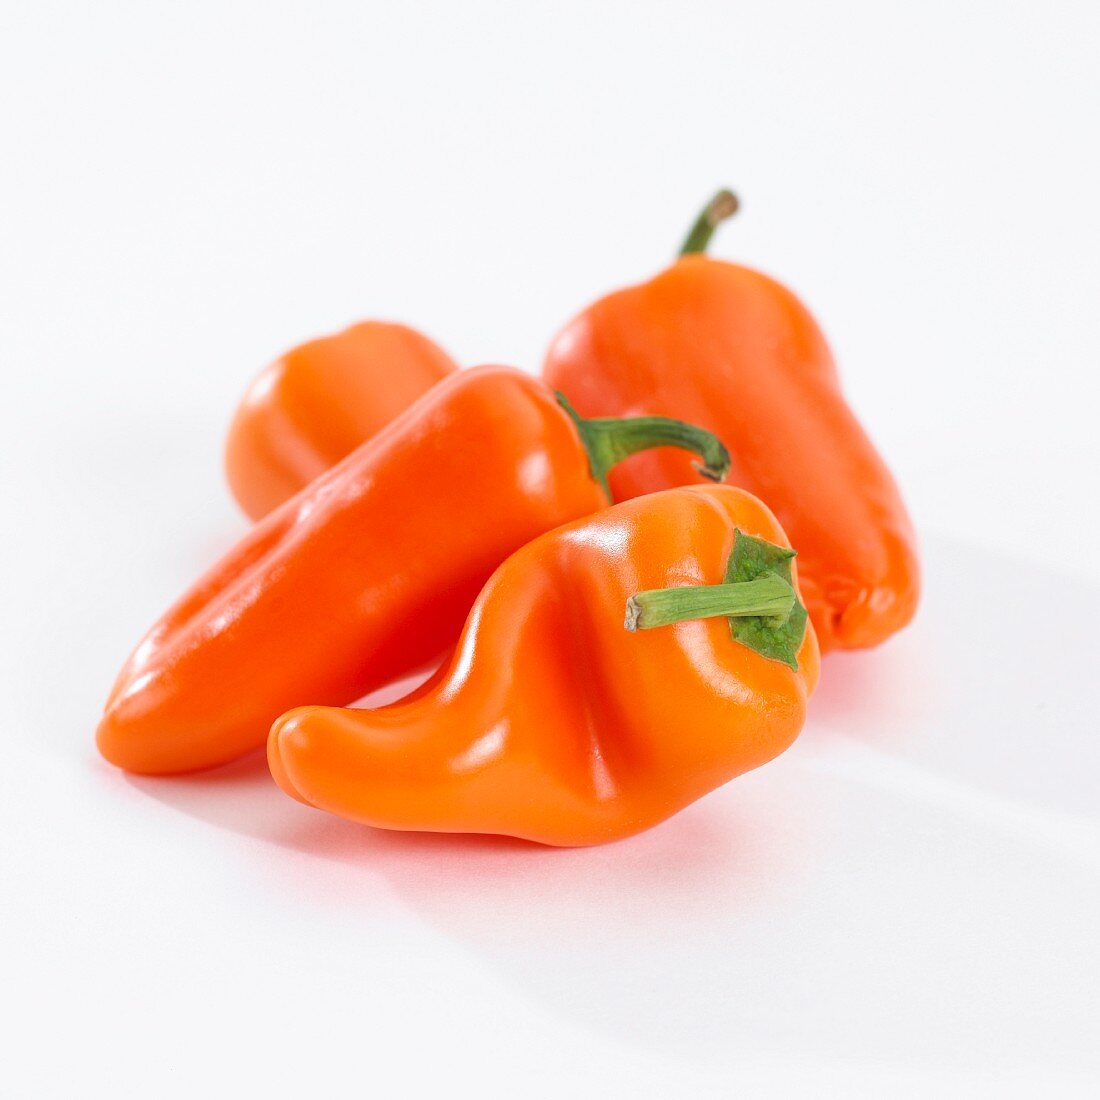 Four orange chilli peppers (capsicum annuum)